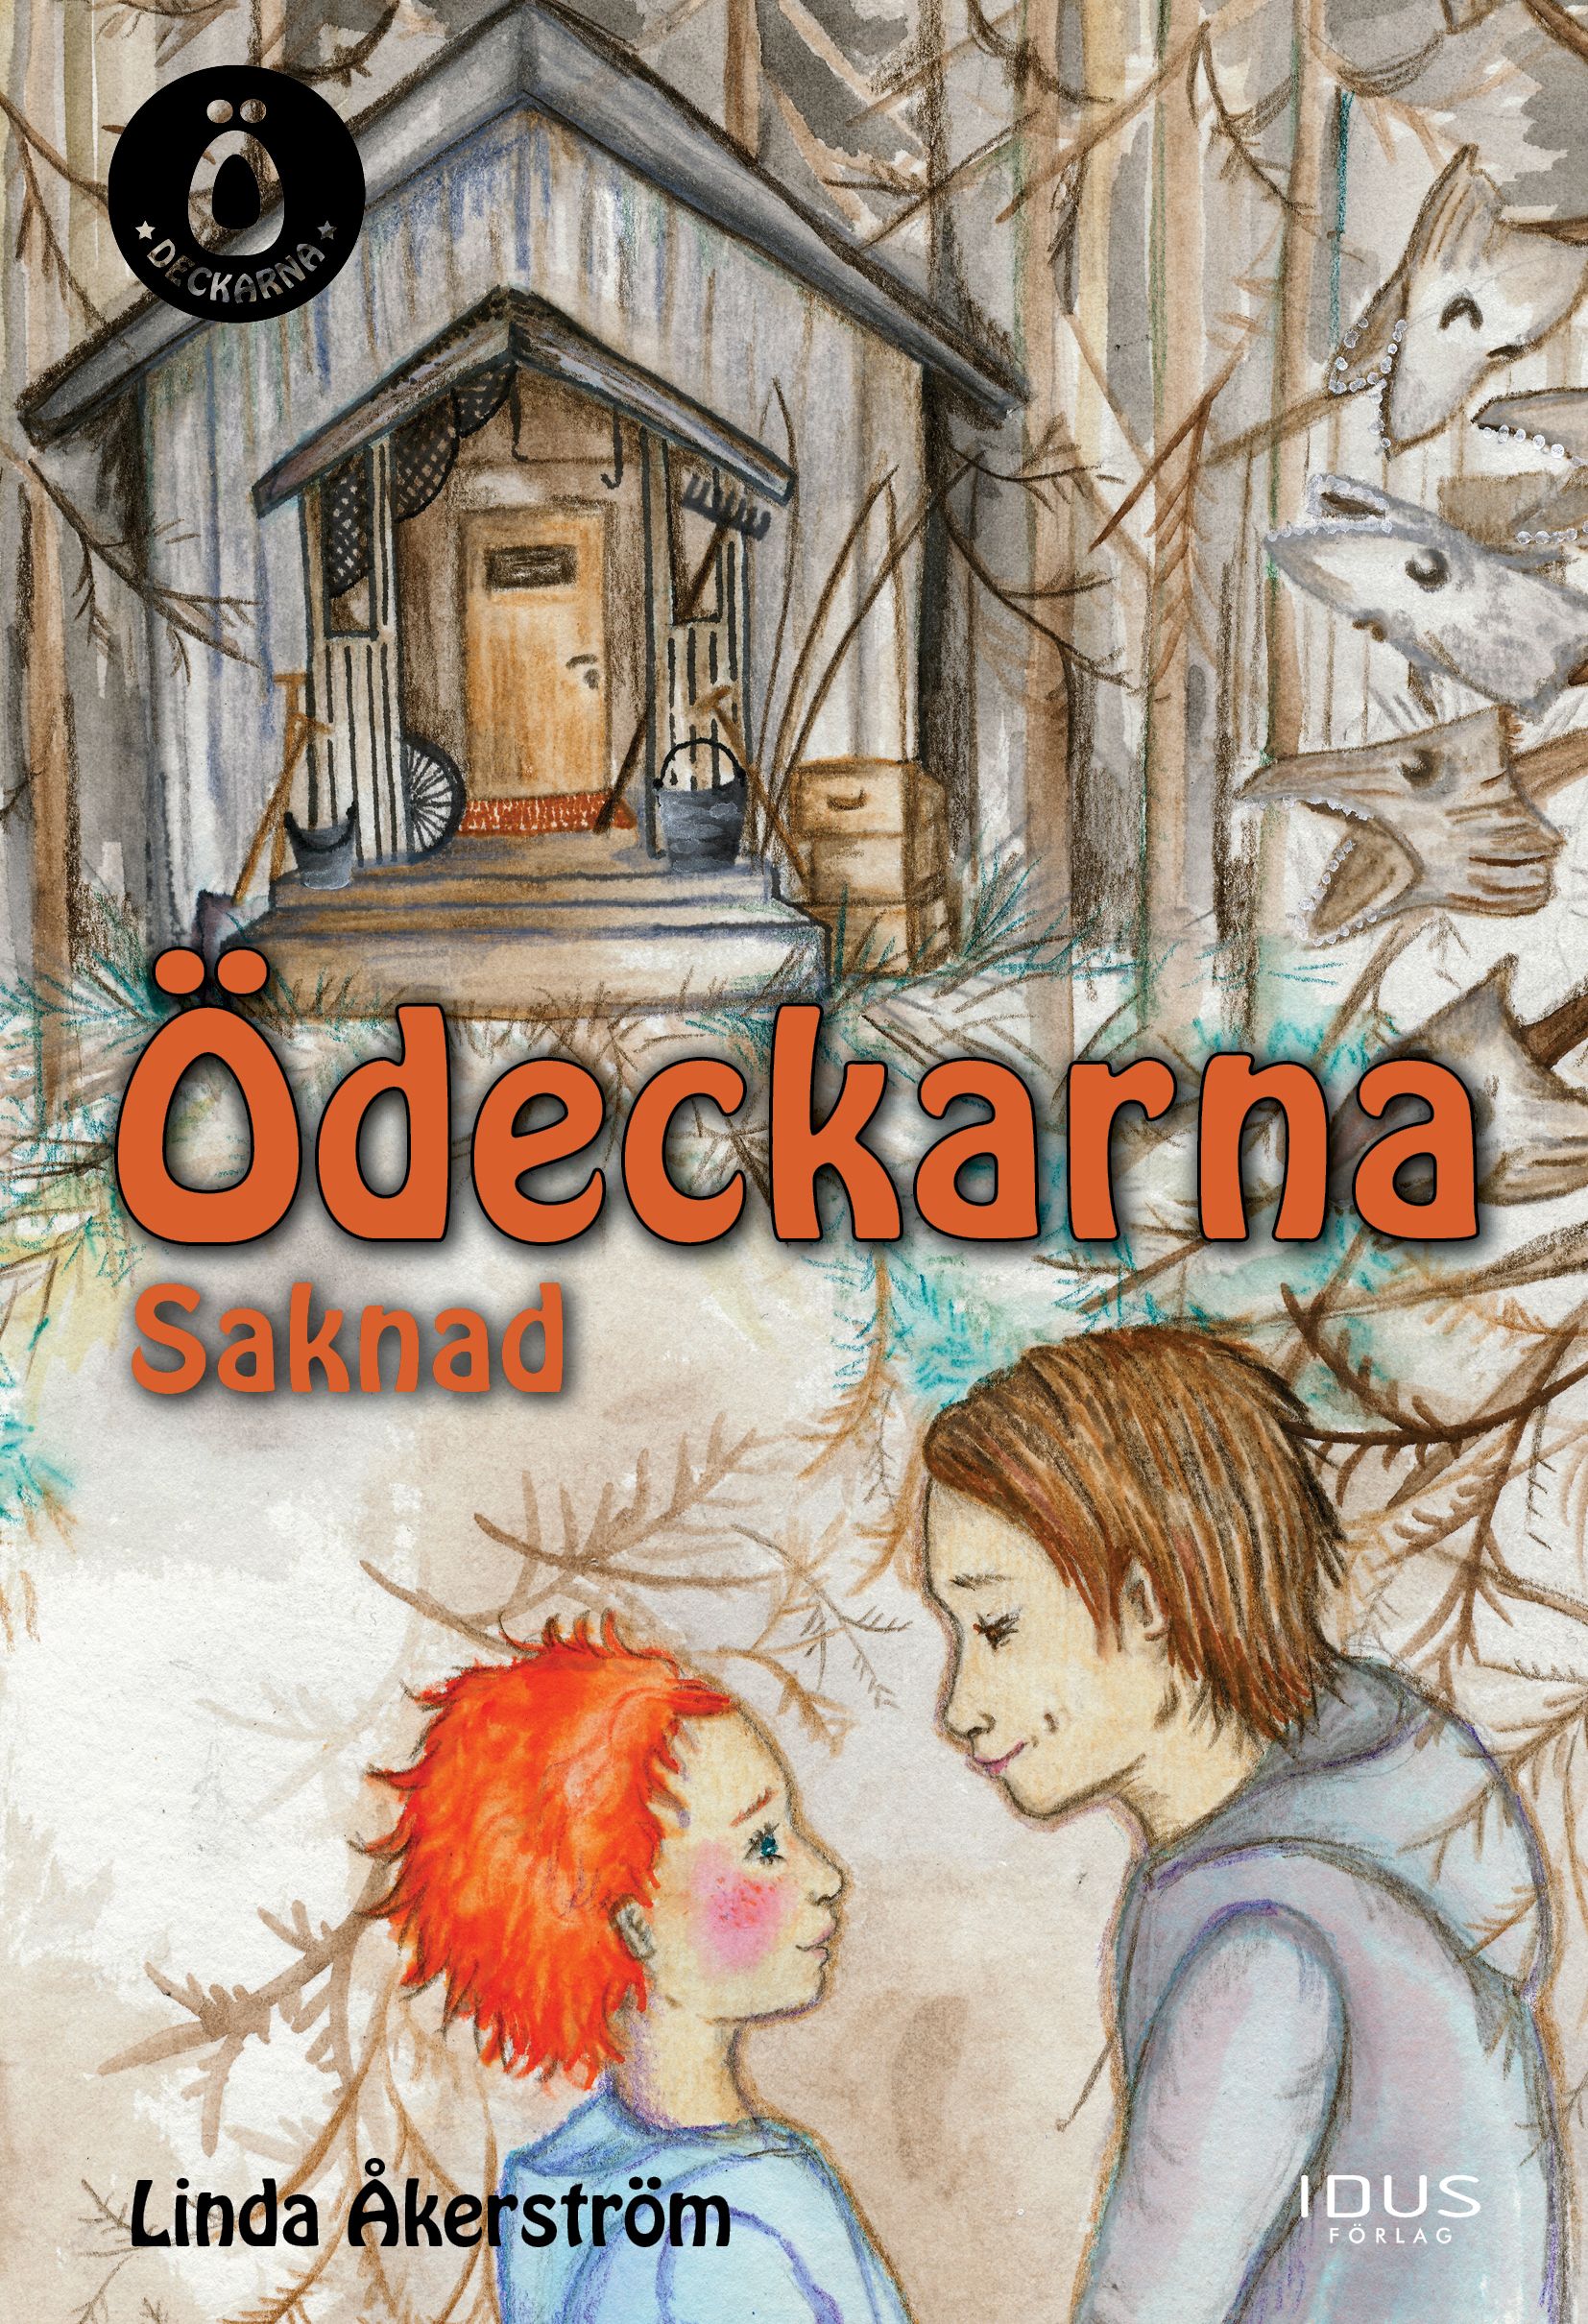 Ö-deckarna - Saknad, e-bok av Linda Åkerström